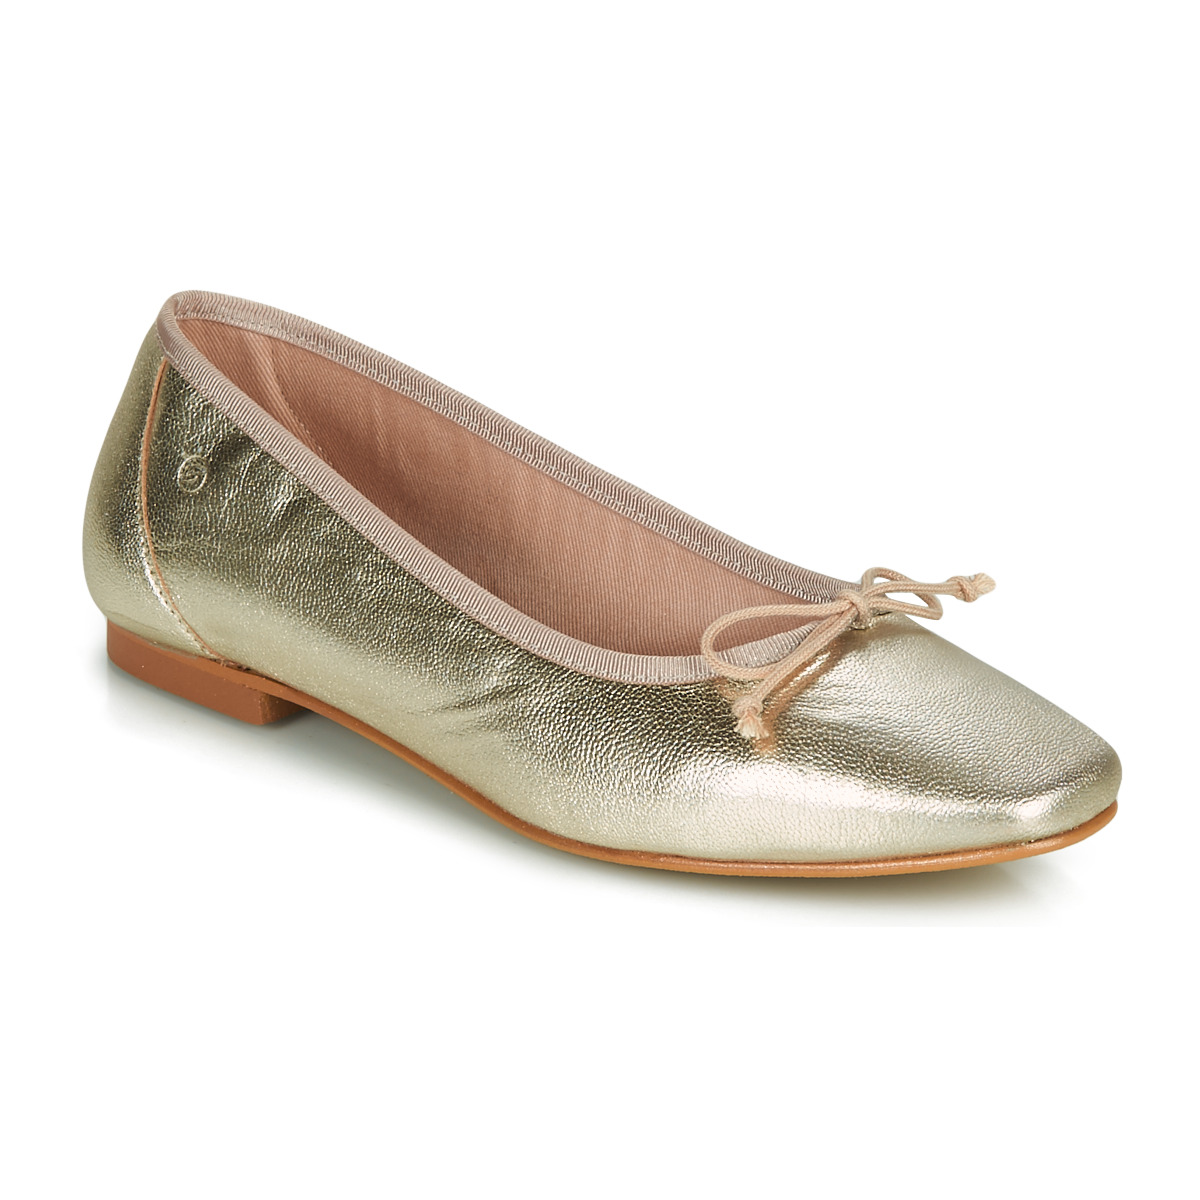 Schuhe Damen Ballerinas Betty London ONDINE Golden